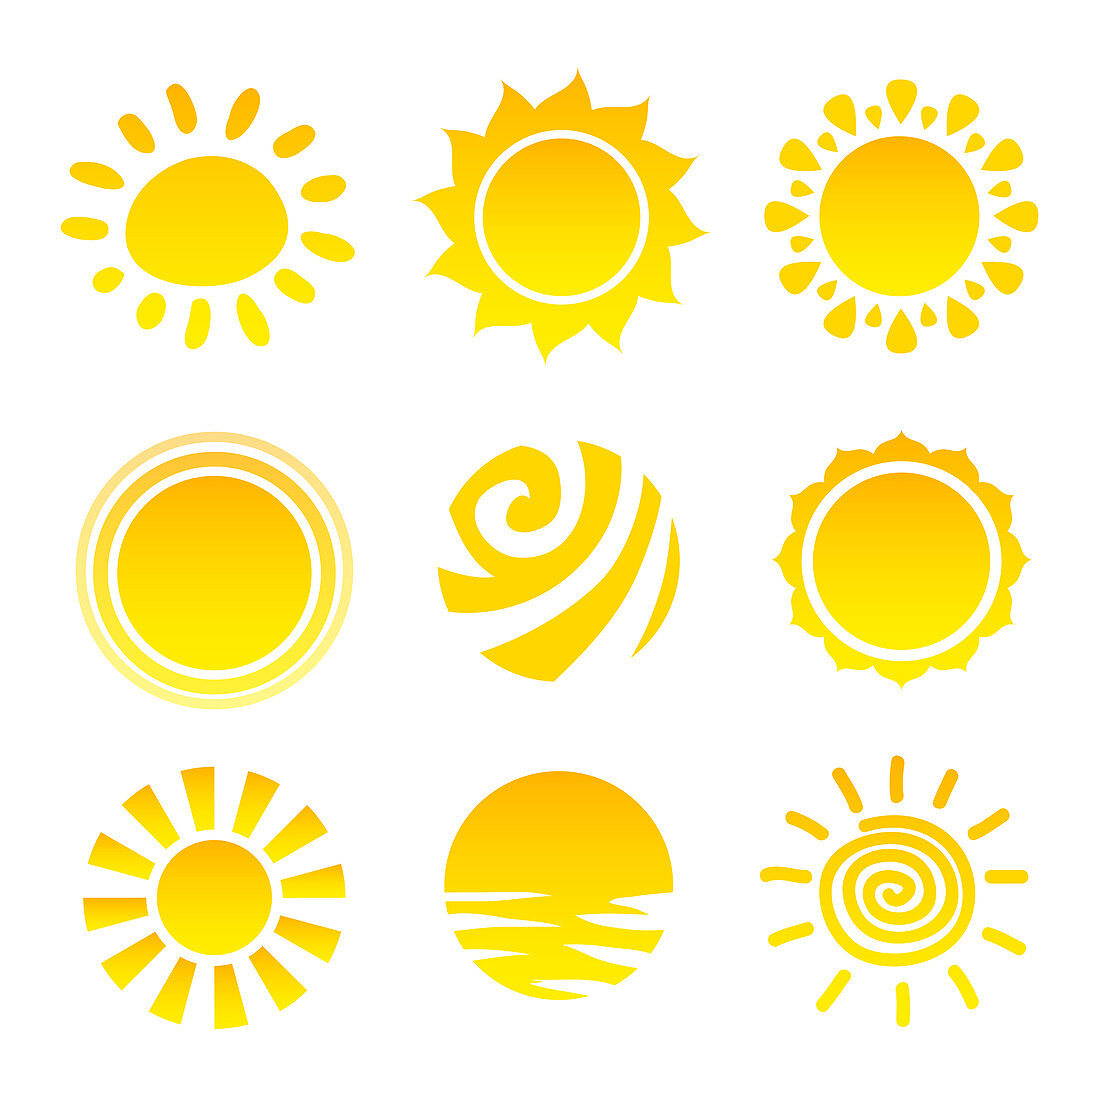 Sun icons, illustration